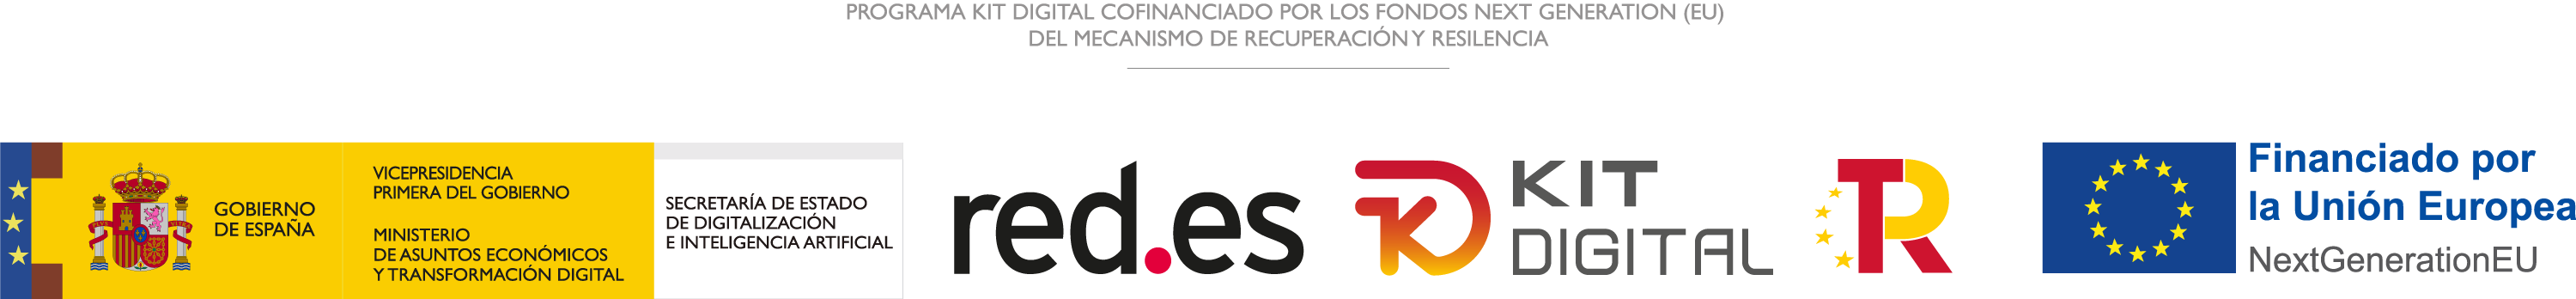 Programa Kit Digital cofinanciado por los fondos next generation (EU) del mecanismo de recuperación y resilencia. Gobierno de España, Red.es, Kit Digital, R, Financiado por la Unión Europea